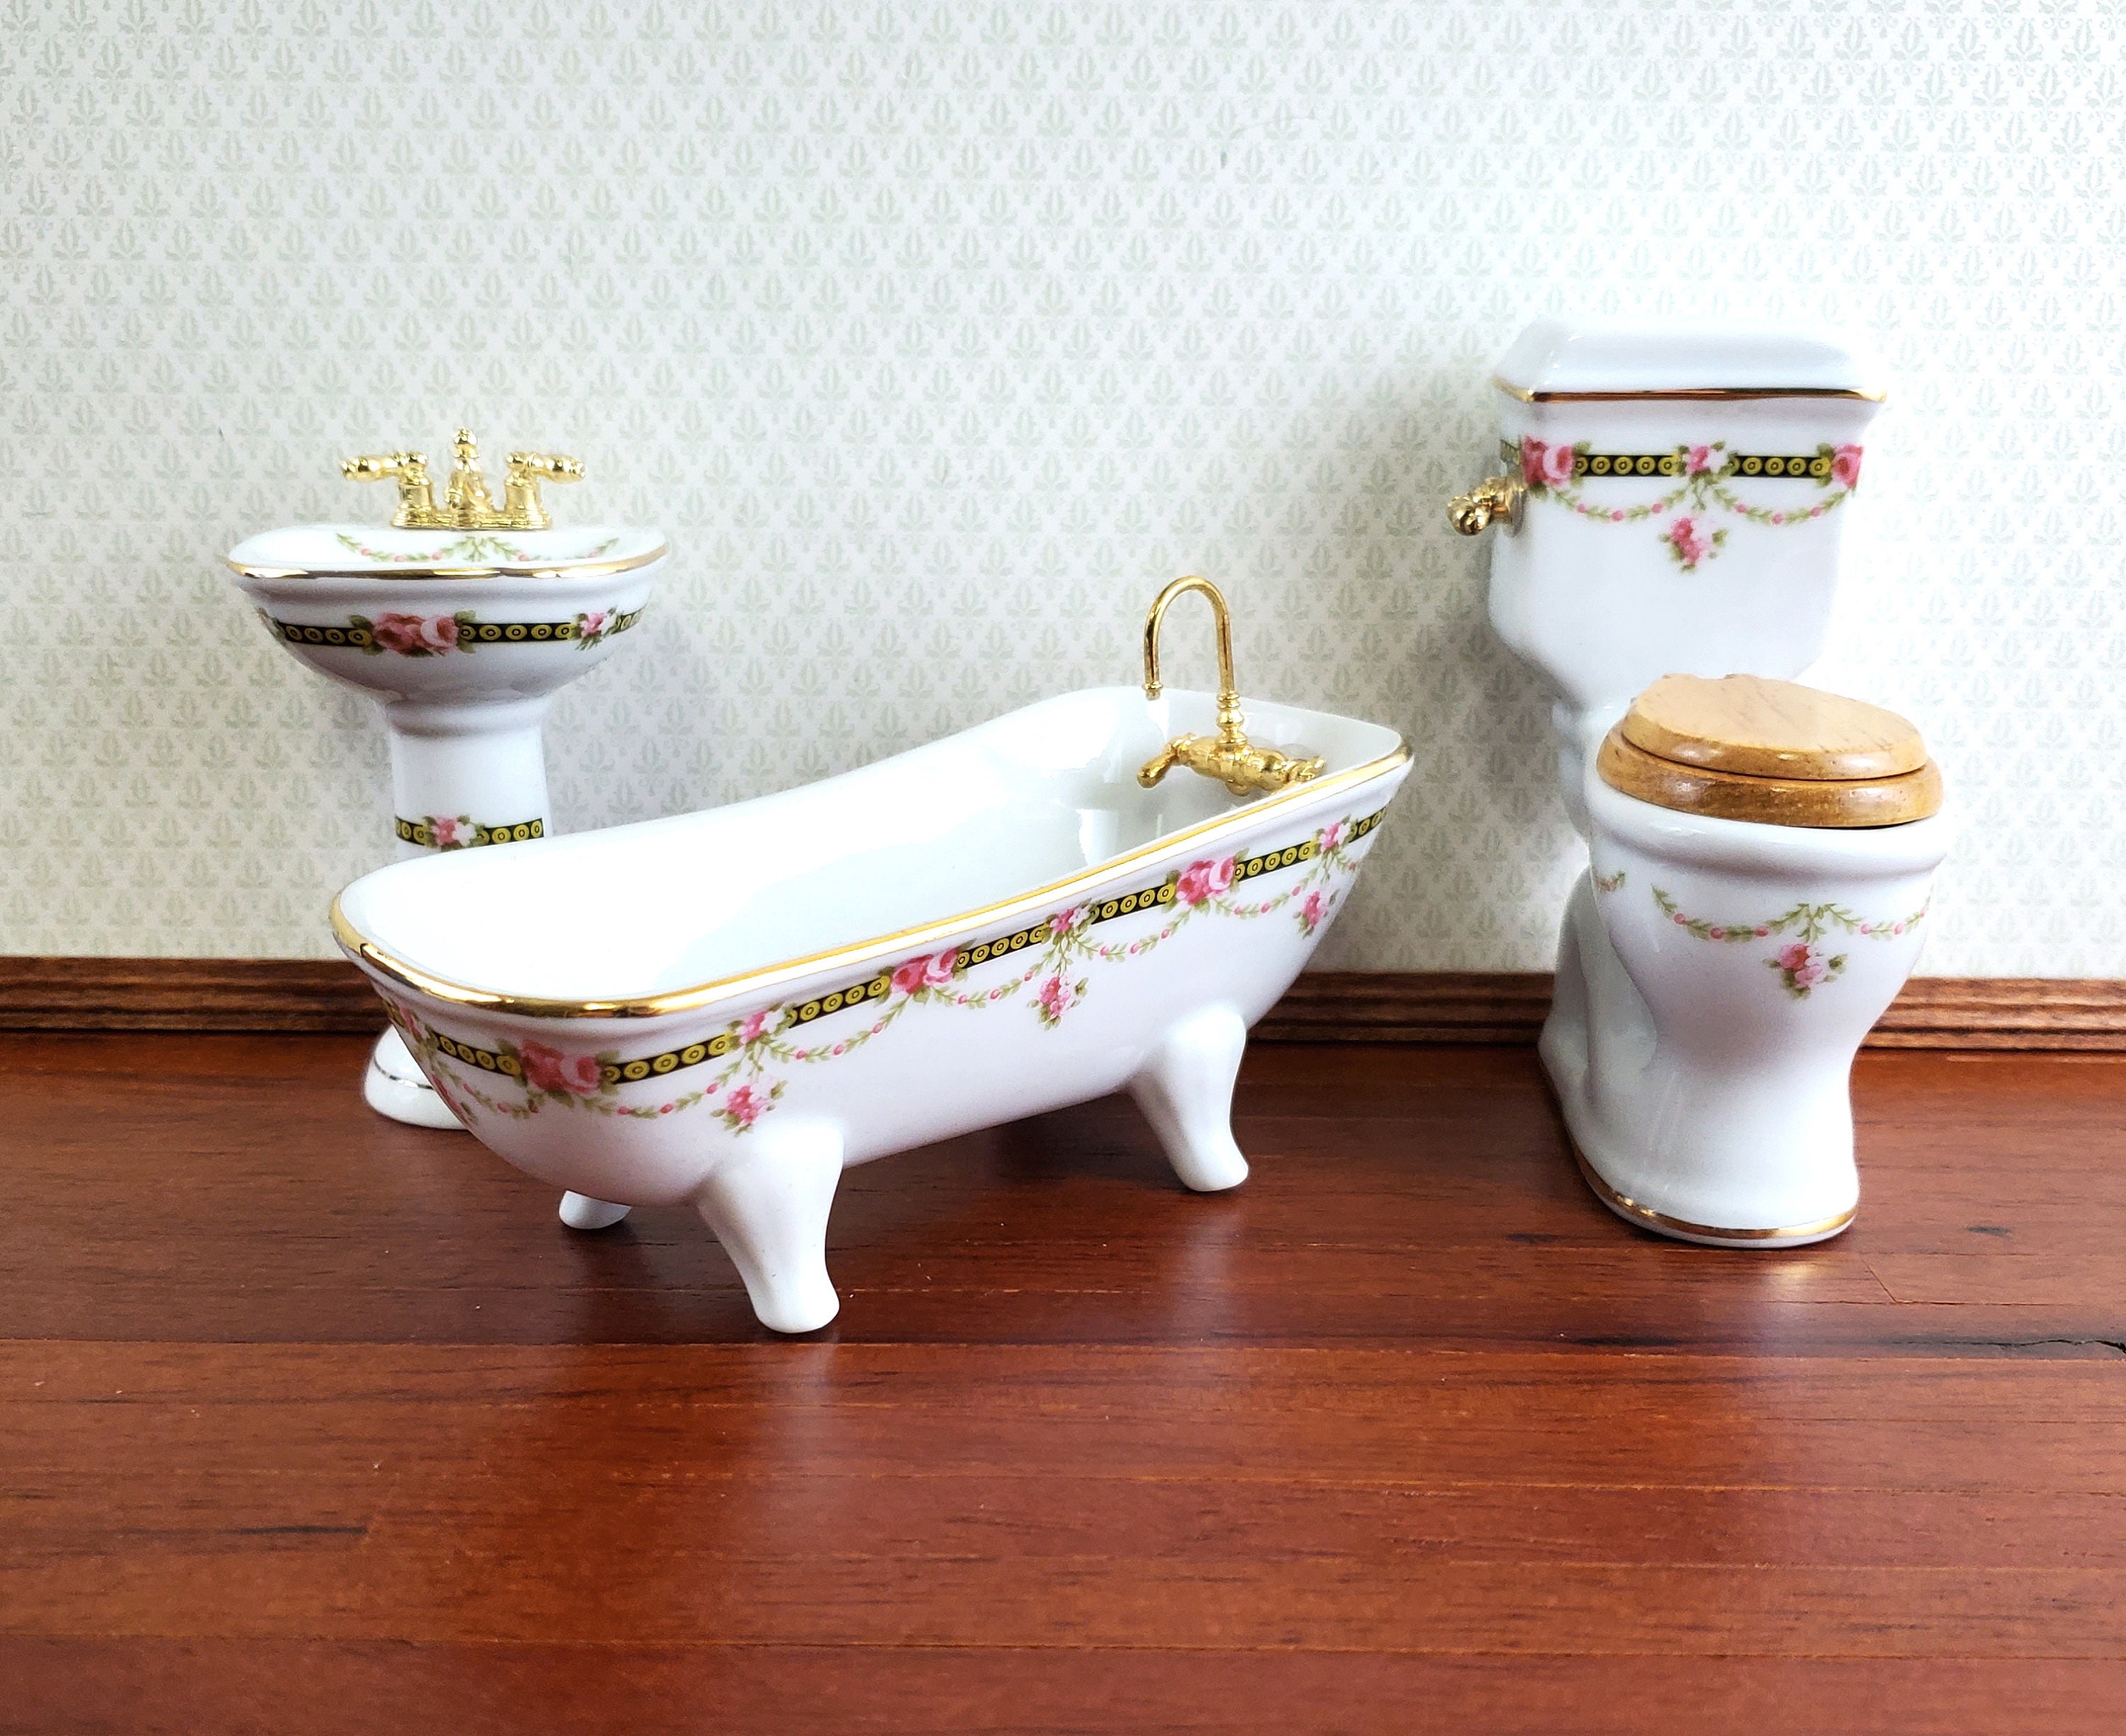 Dollhouse HALF SCALE Bathroom Set Reutter Porcelain Tub Toilet